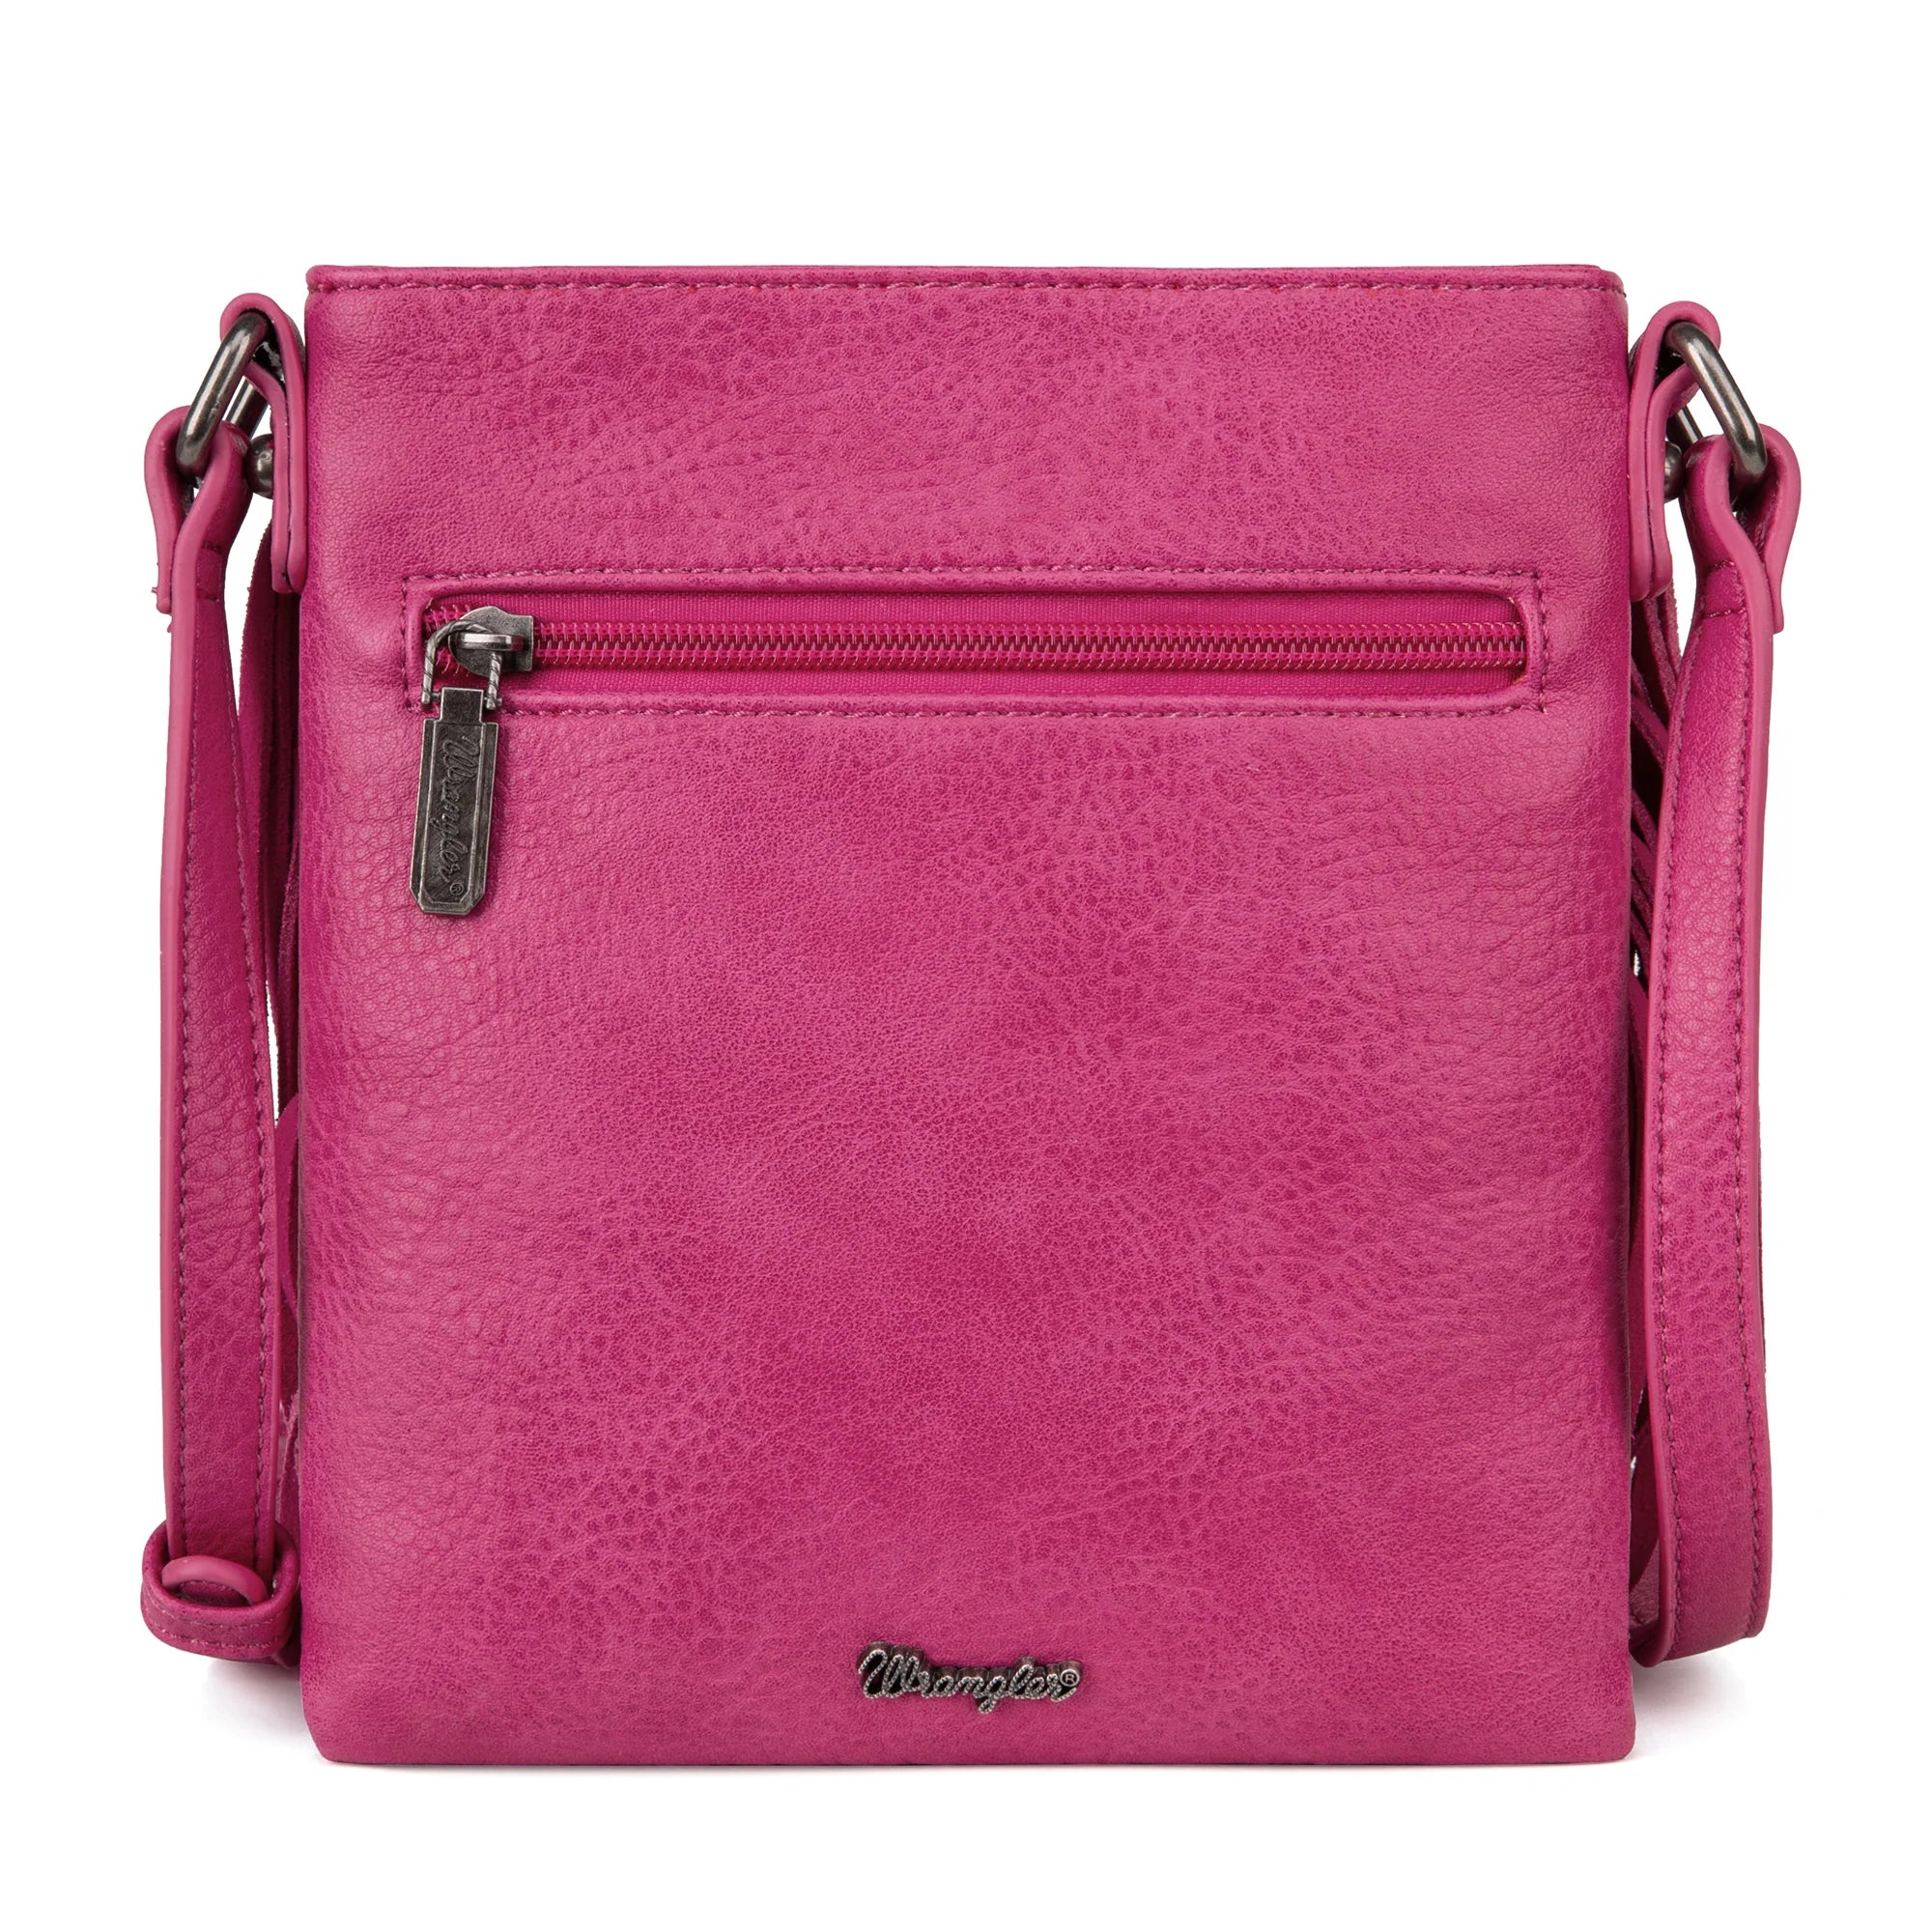 A Wrangler Leather Fringe Denim Pocket Crossbody Bag - Hot Pink (6969633669197)